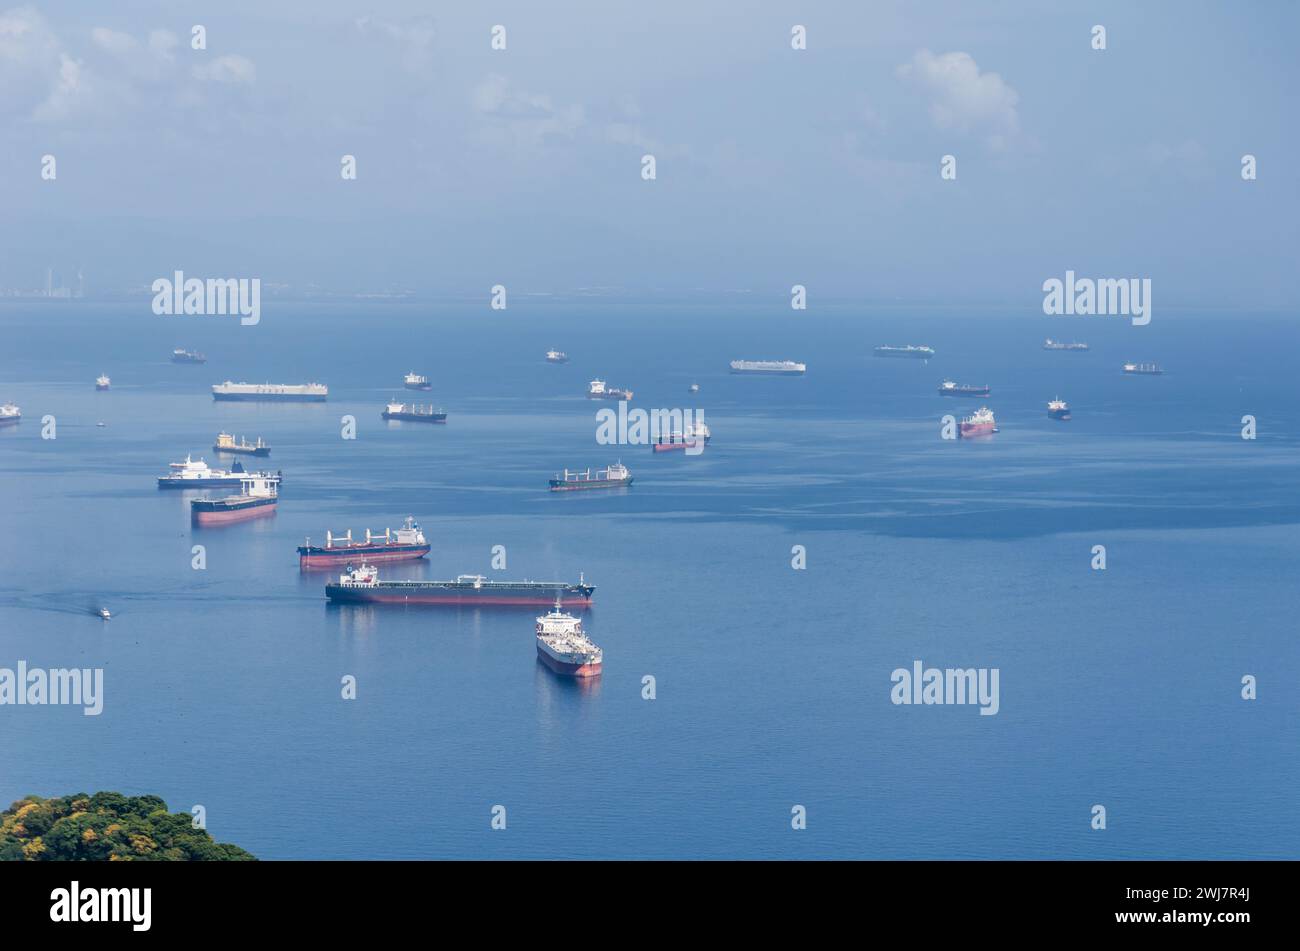 Les navires en attente d'entrée dans le canal de Panama du côté Pacifique jettent l'ancre dans la zone d'attente désignée au large de Balboa et de la chaussée Amador. Banque D'Images